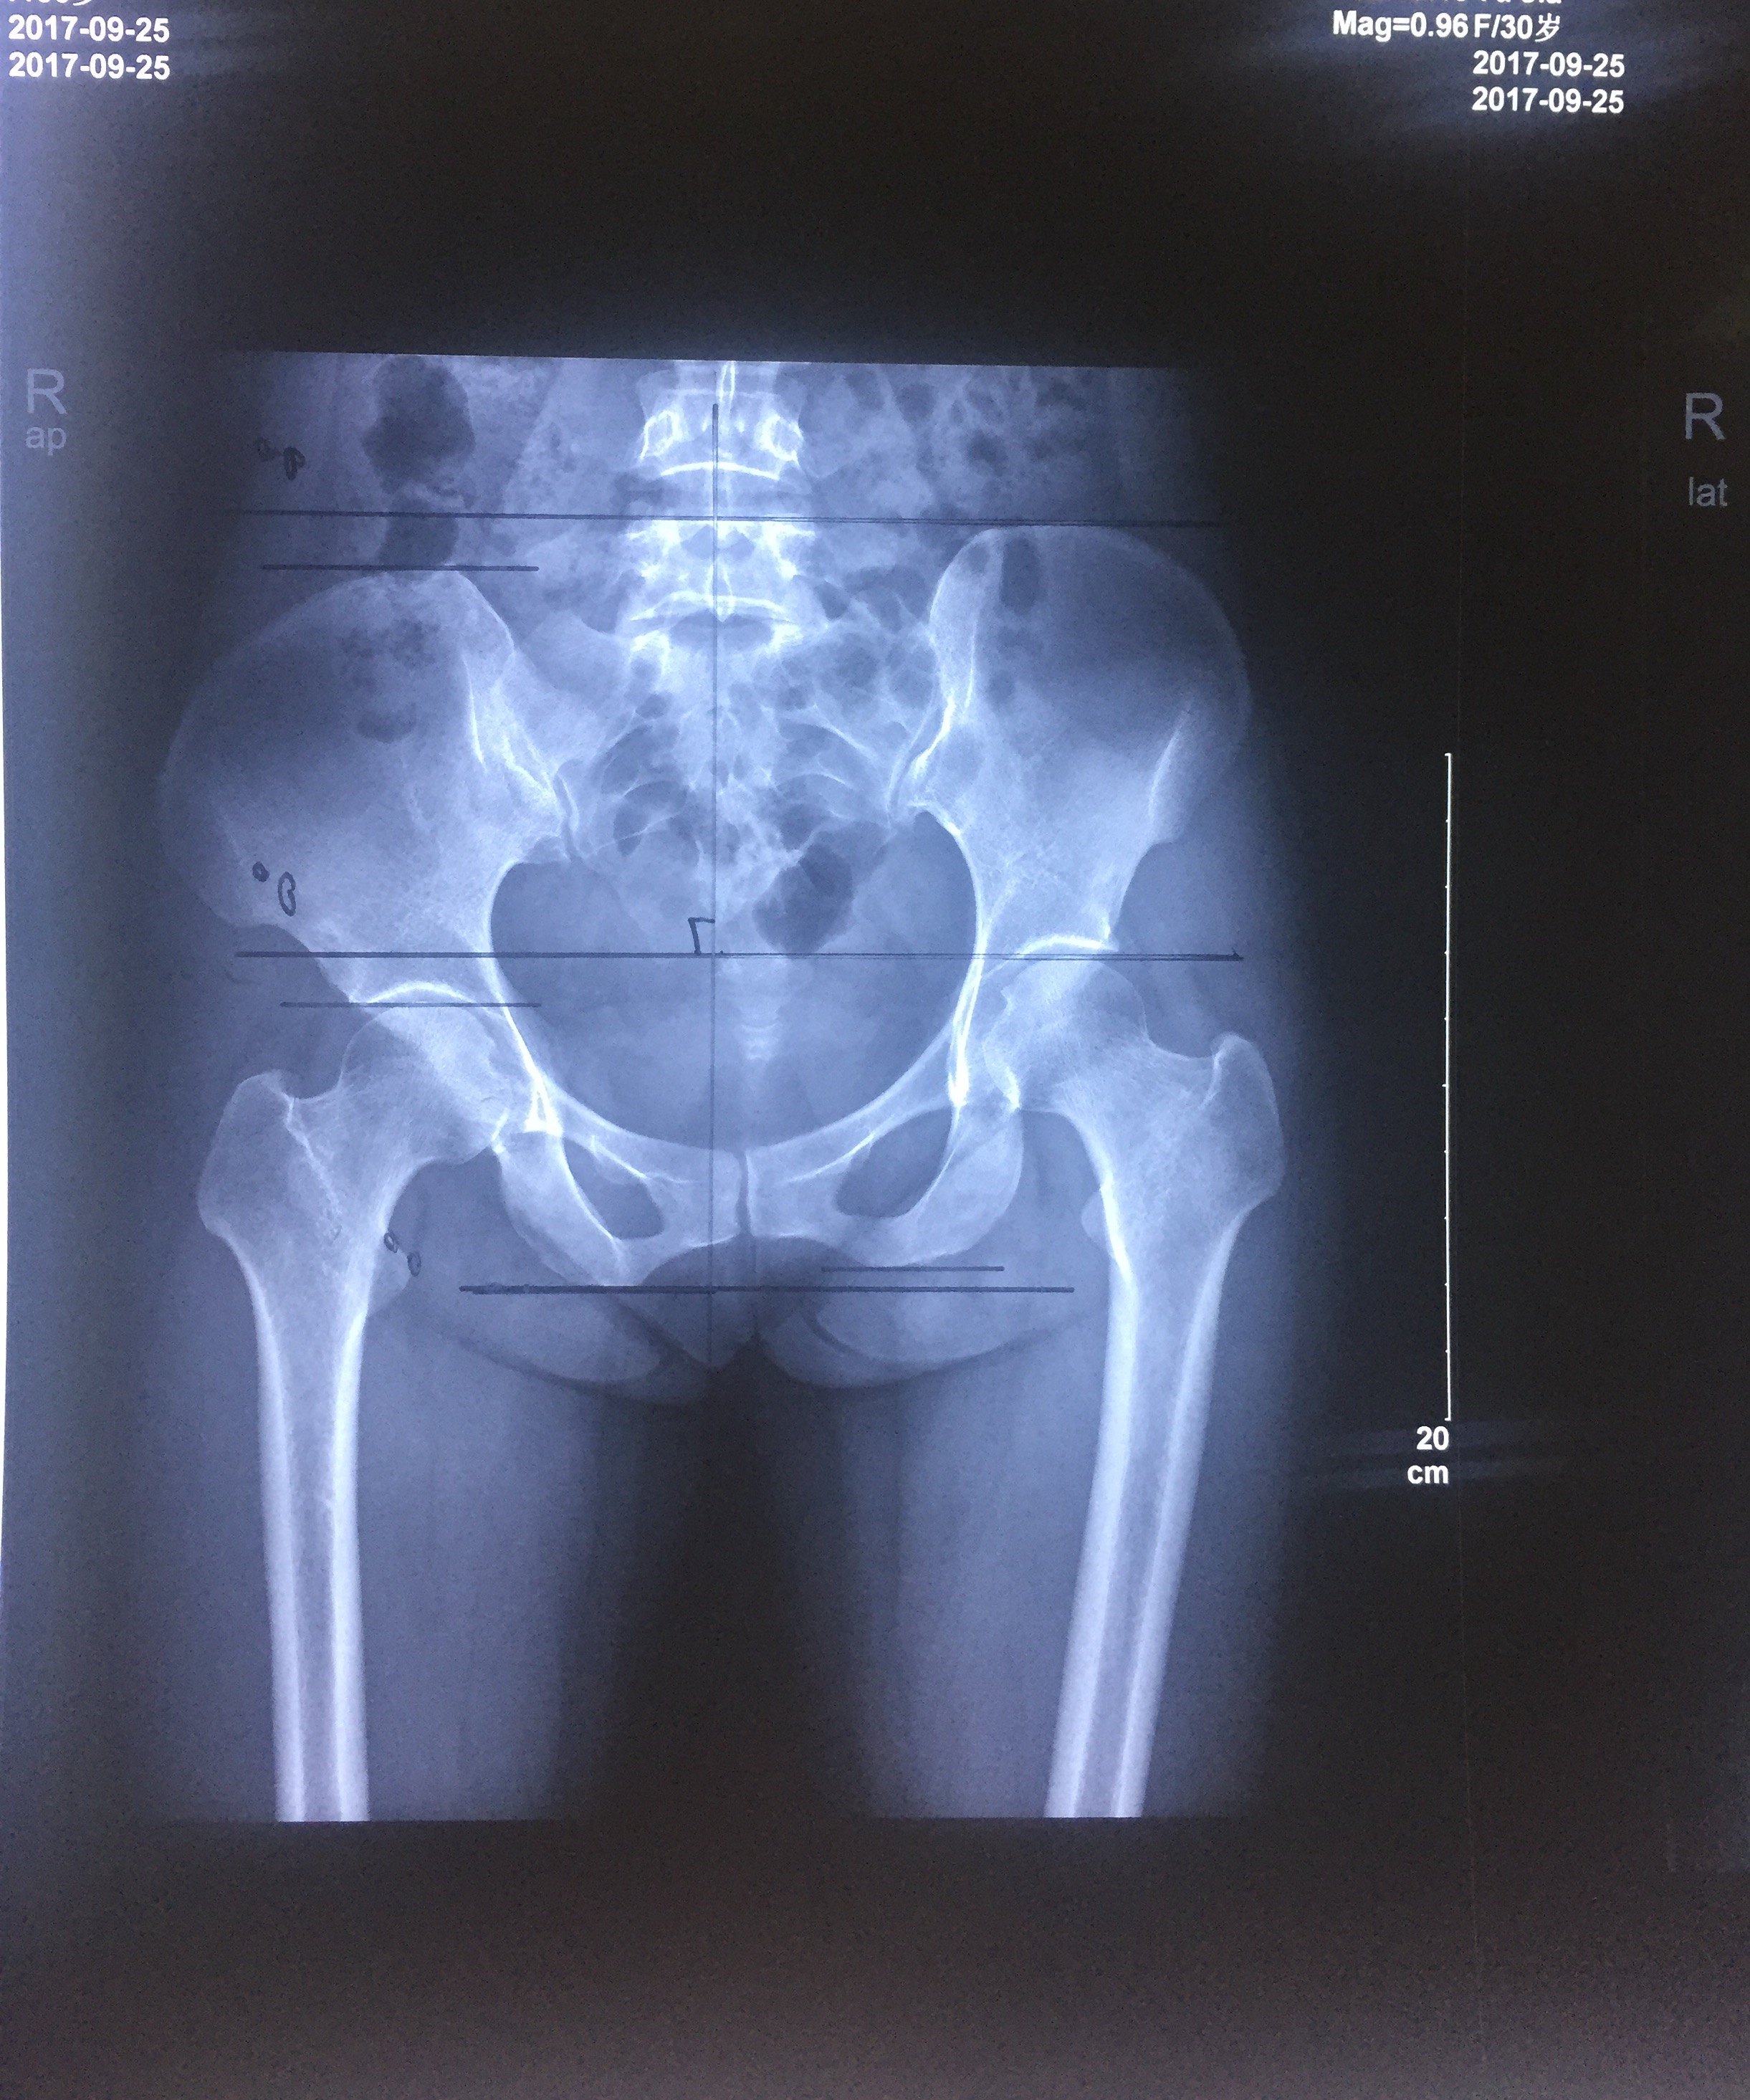 患者非常痛苦x光片提示:骨盆平衡失调,右侧髂骨前旋,导致右侧腿长分析